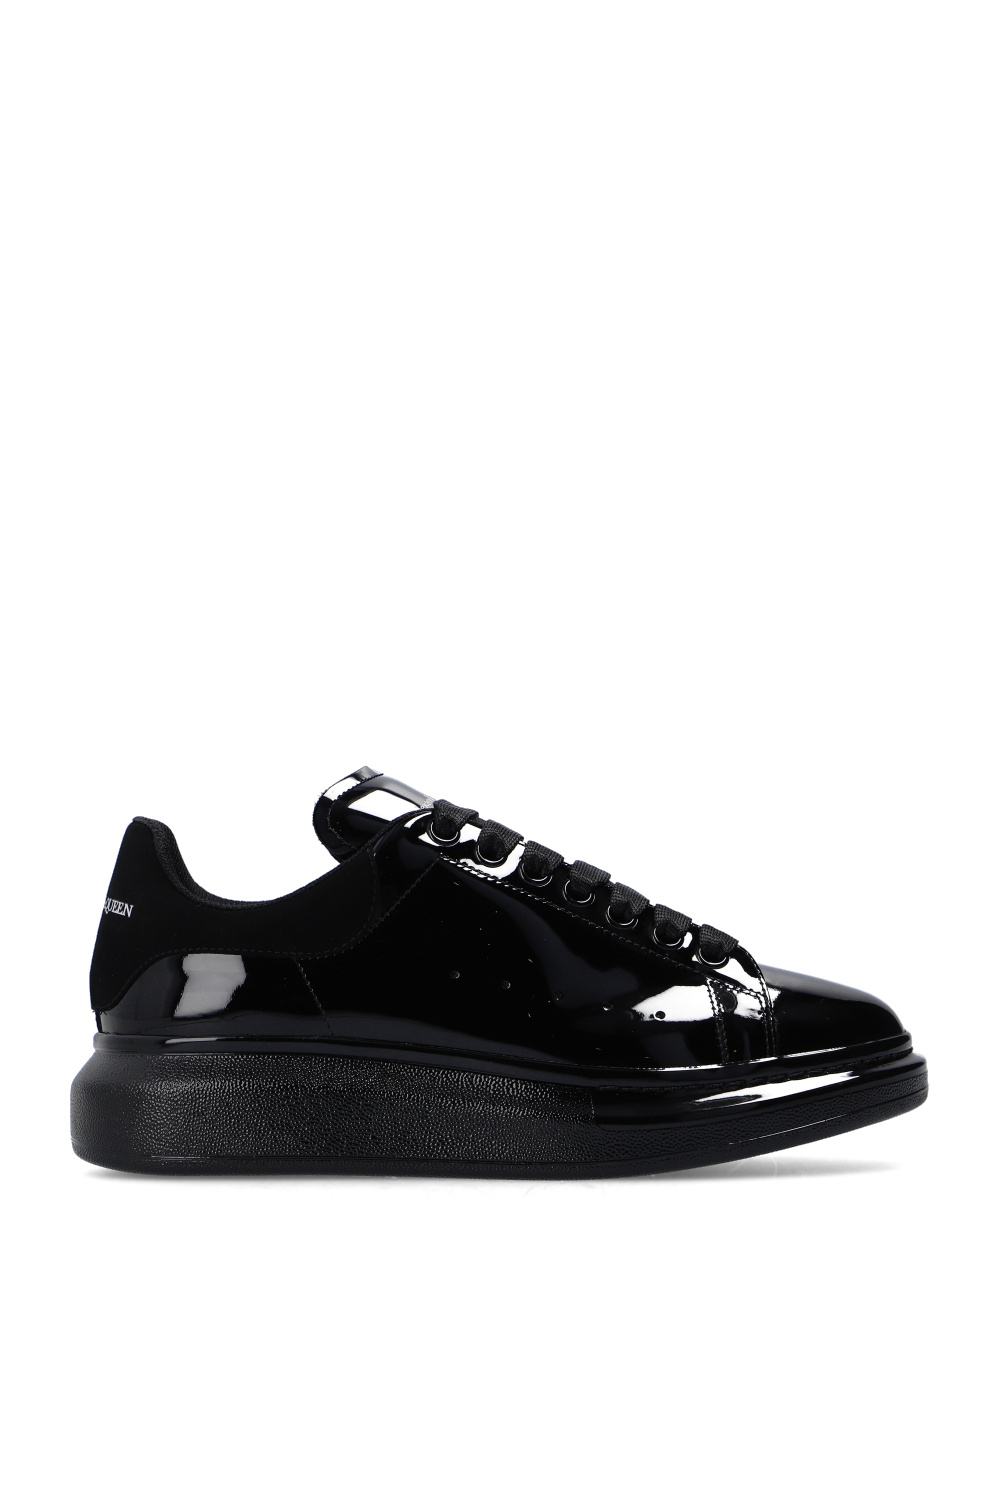 Alexander McQueen Leather sneakers | Men's Shoes | IetpShops